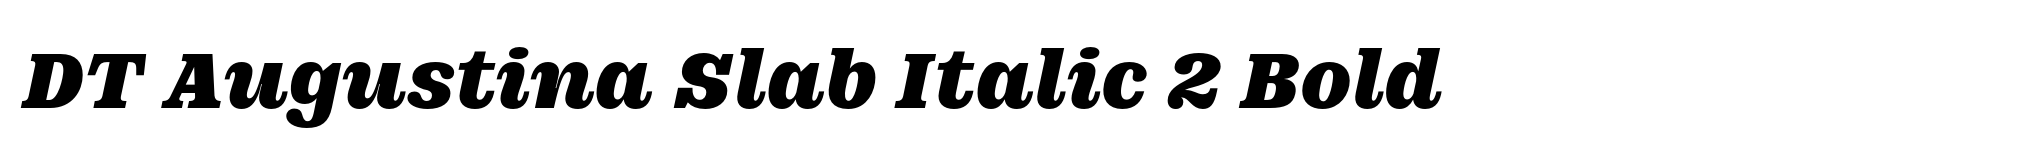 DT Augustina Slab Italic 2 Bold image